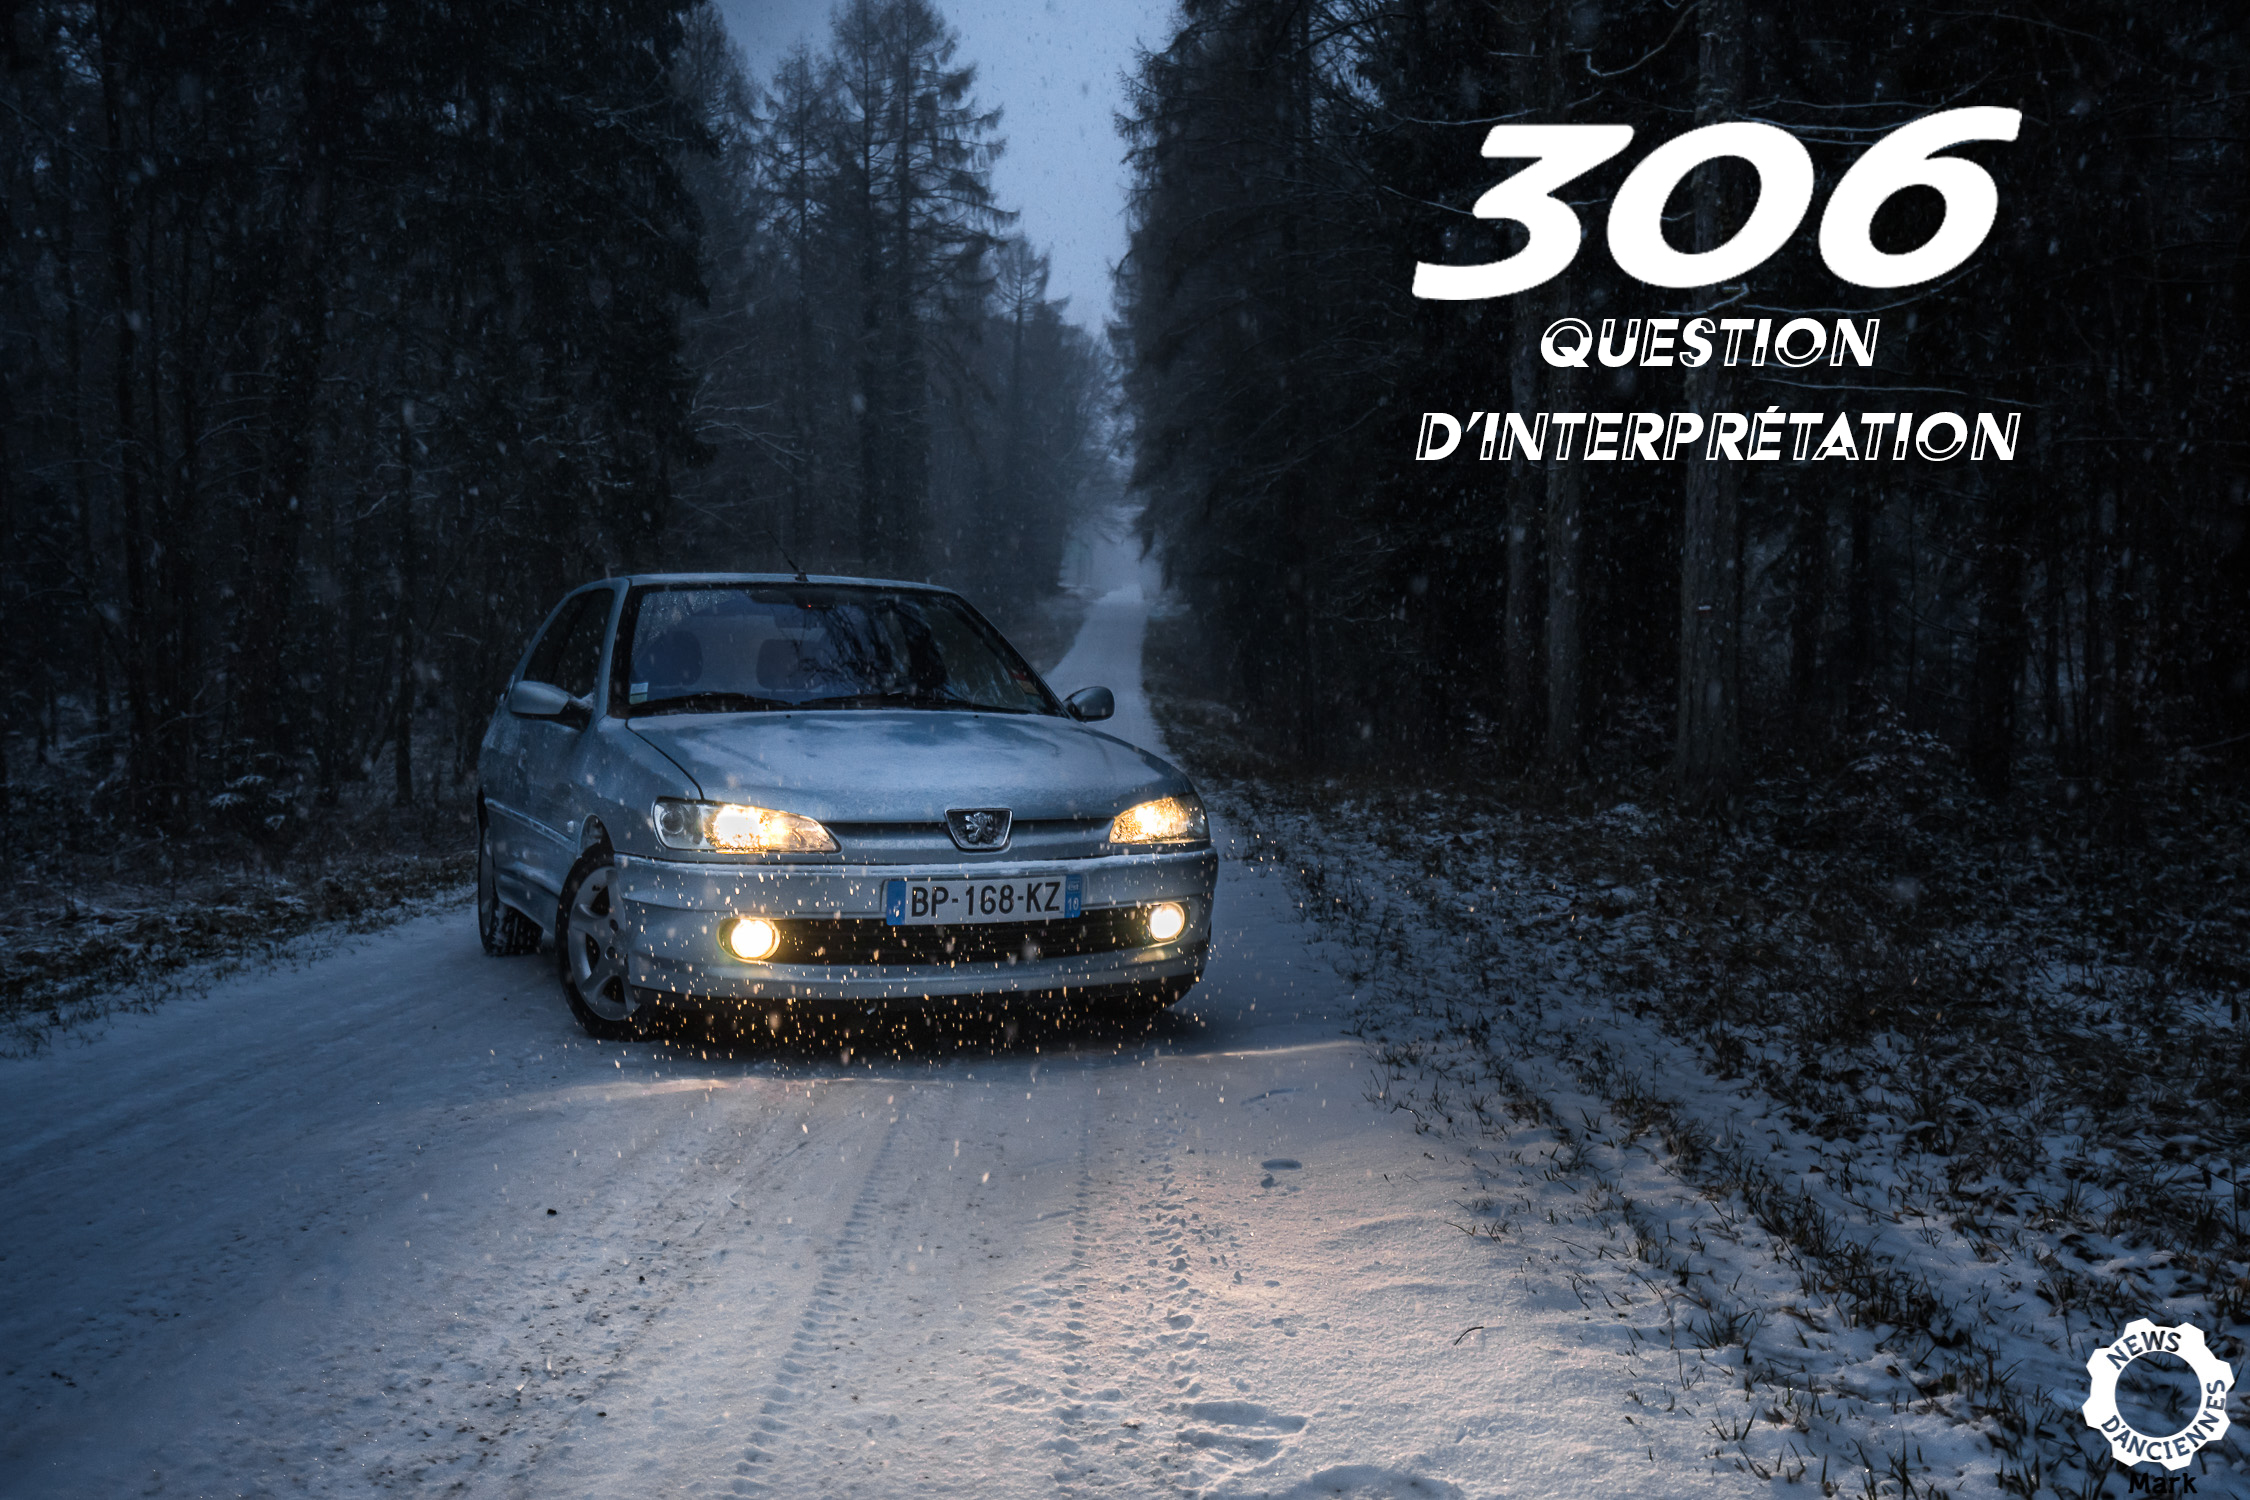 Essai Peugeot 306 2.0L HDI : Question d’interprétation